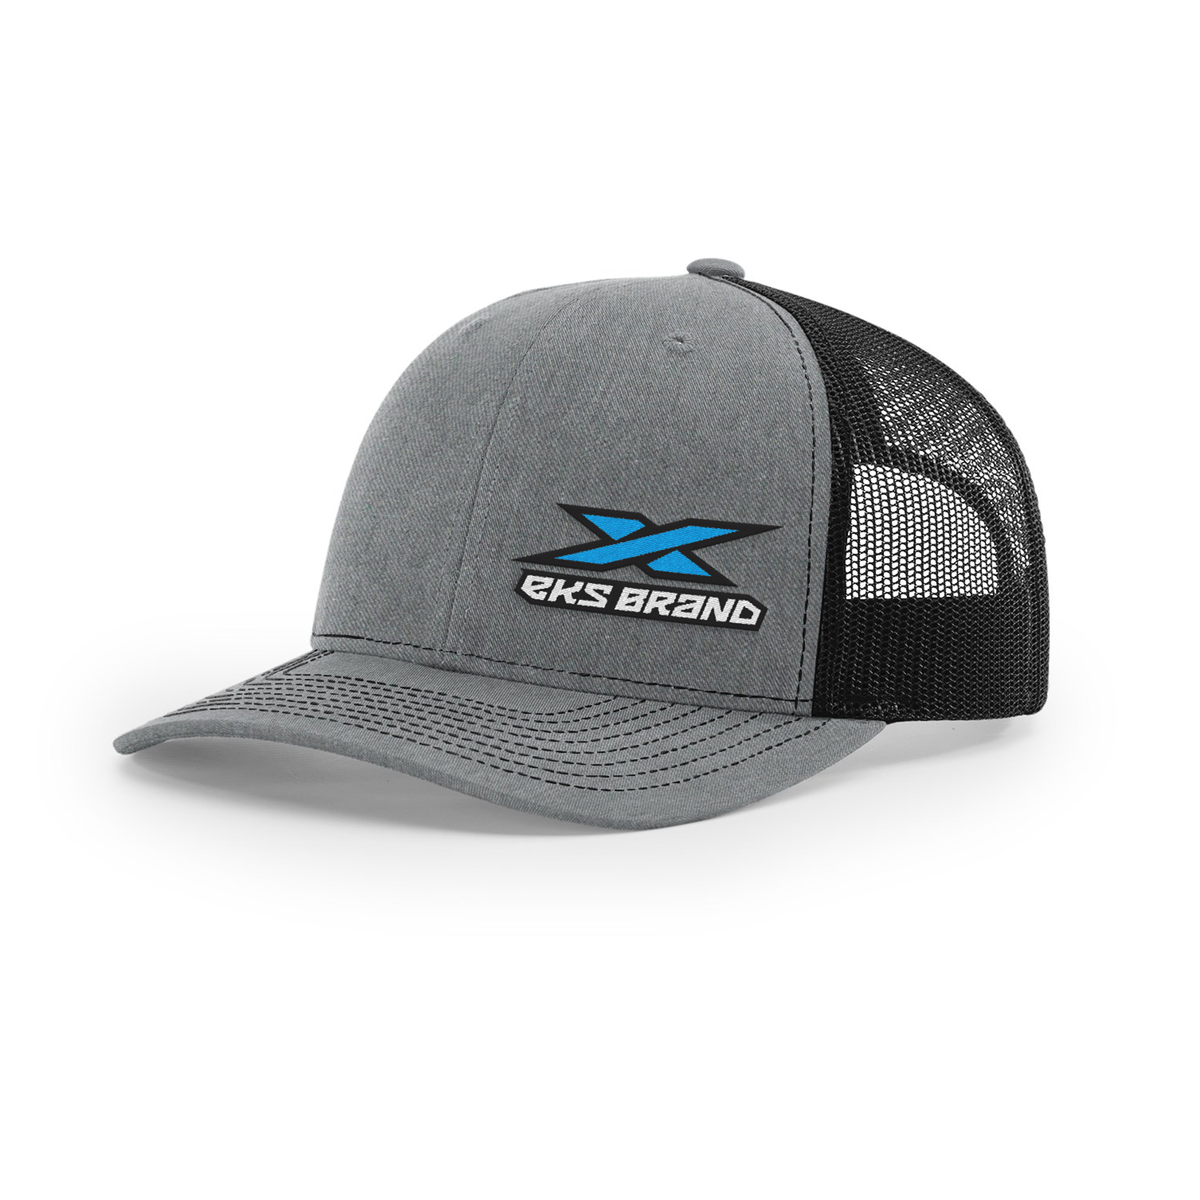 EKS Brand snap back, half mesh hat.